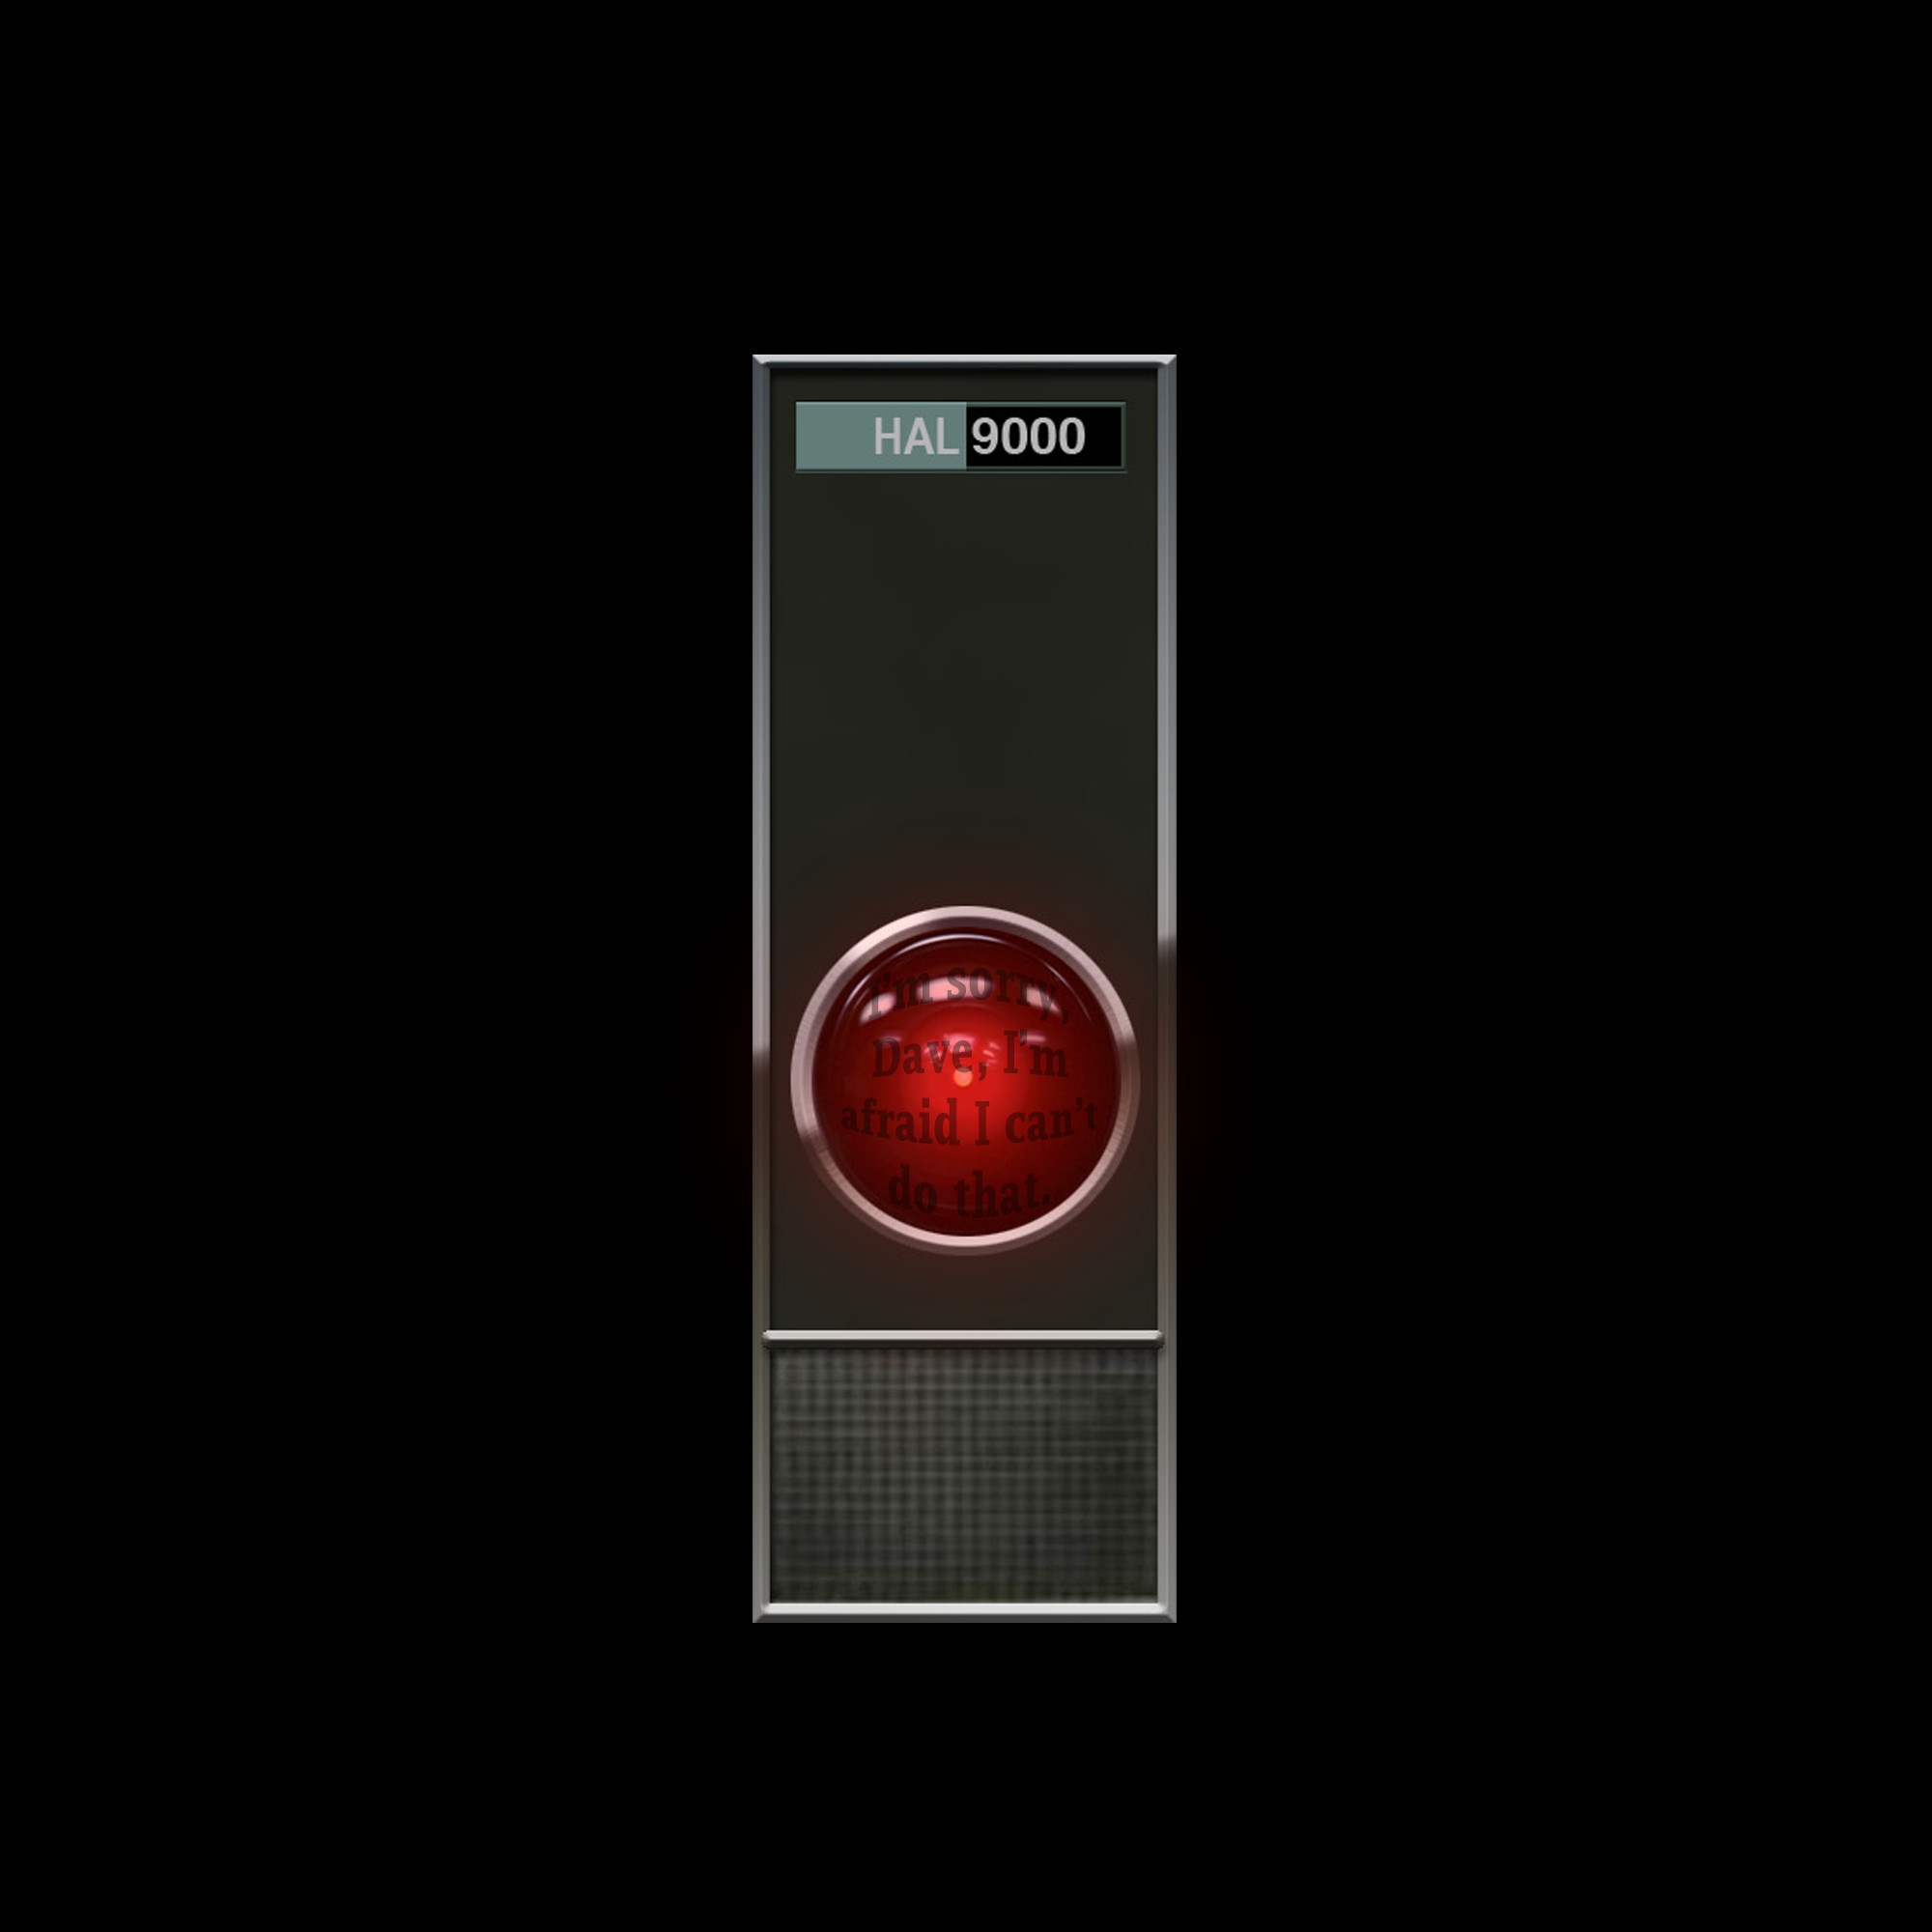 2000x2000 HAL 9000 by Schritt HAL 9000 by Schritt